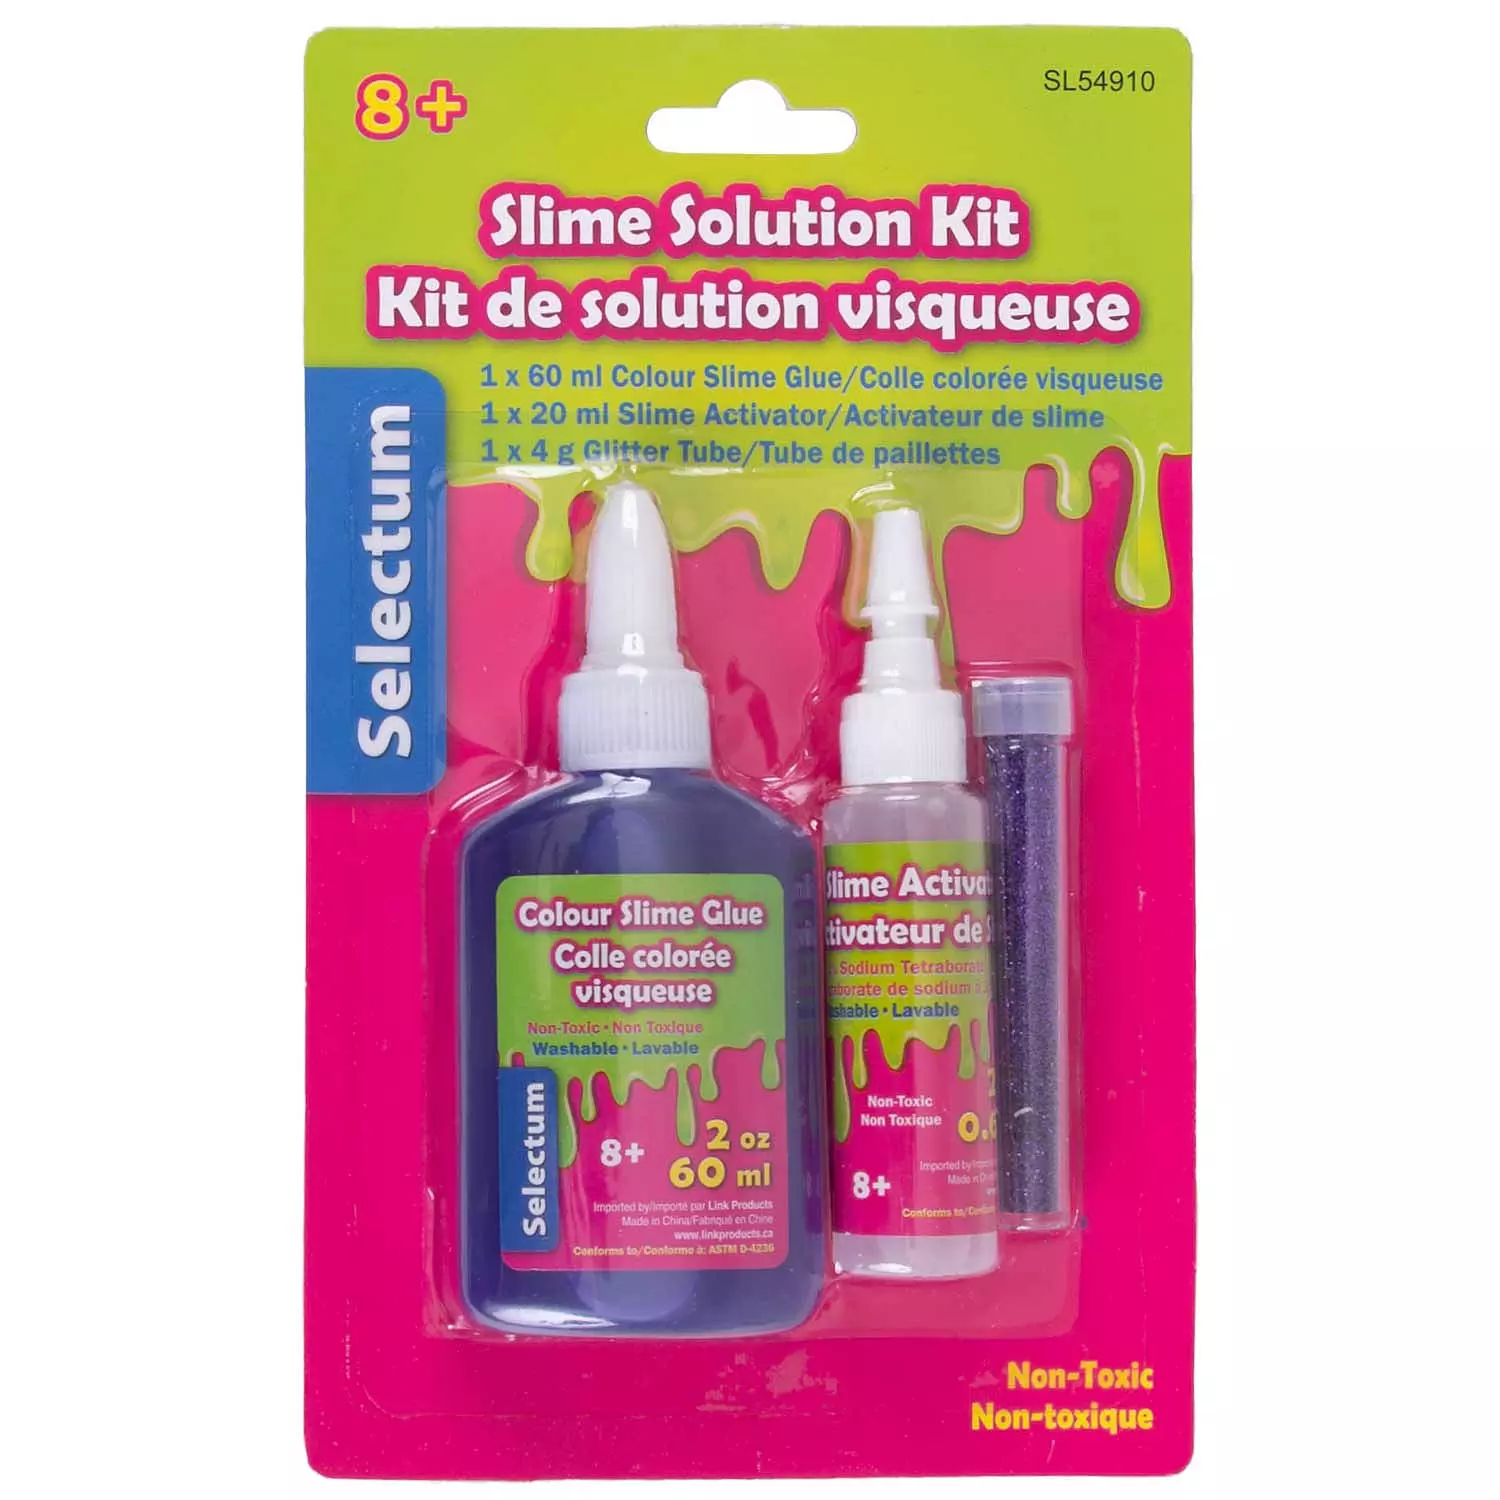 Slime solution kit